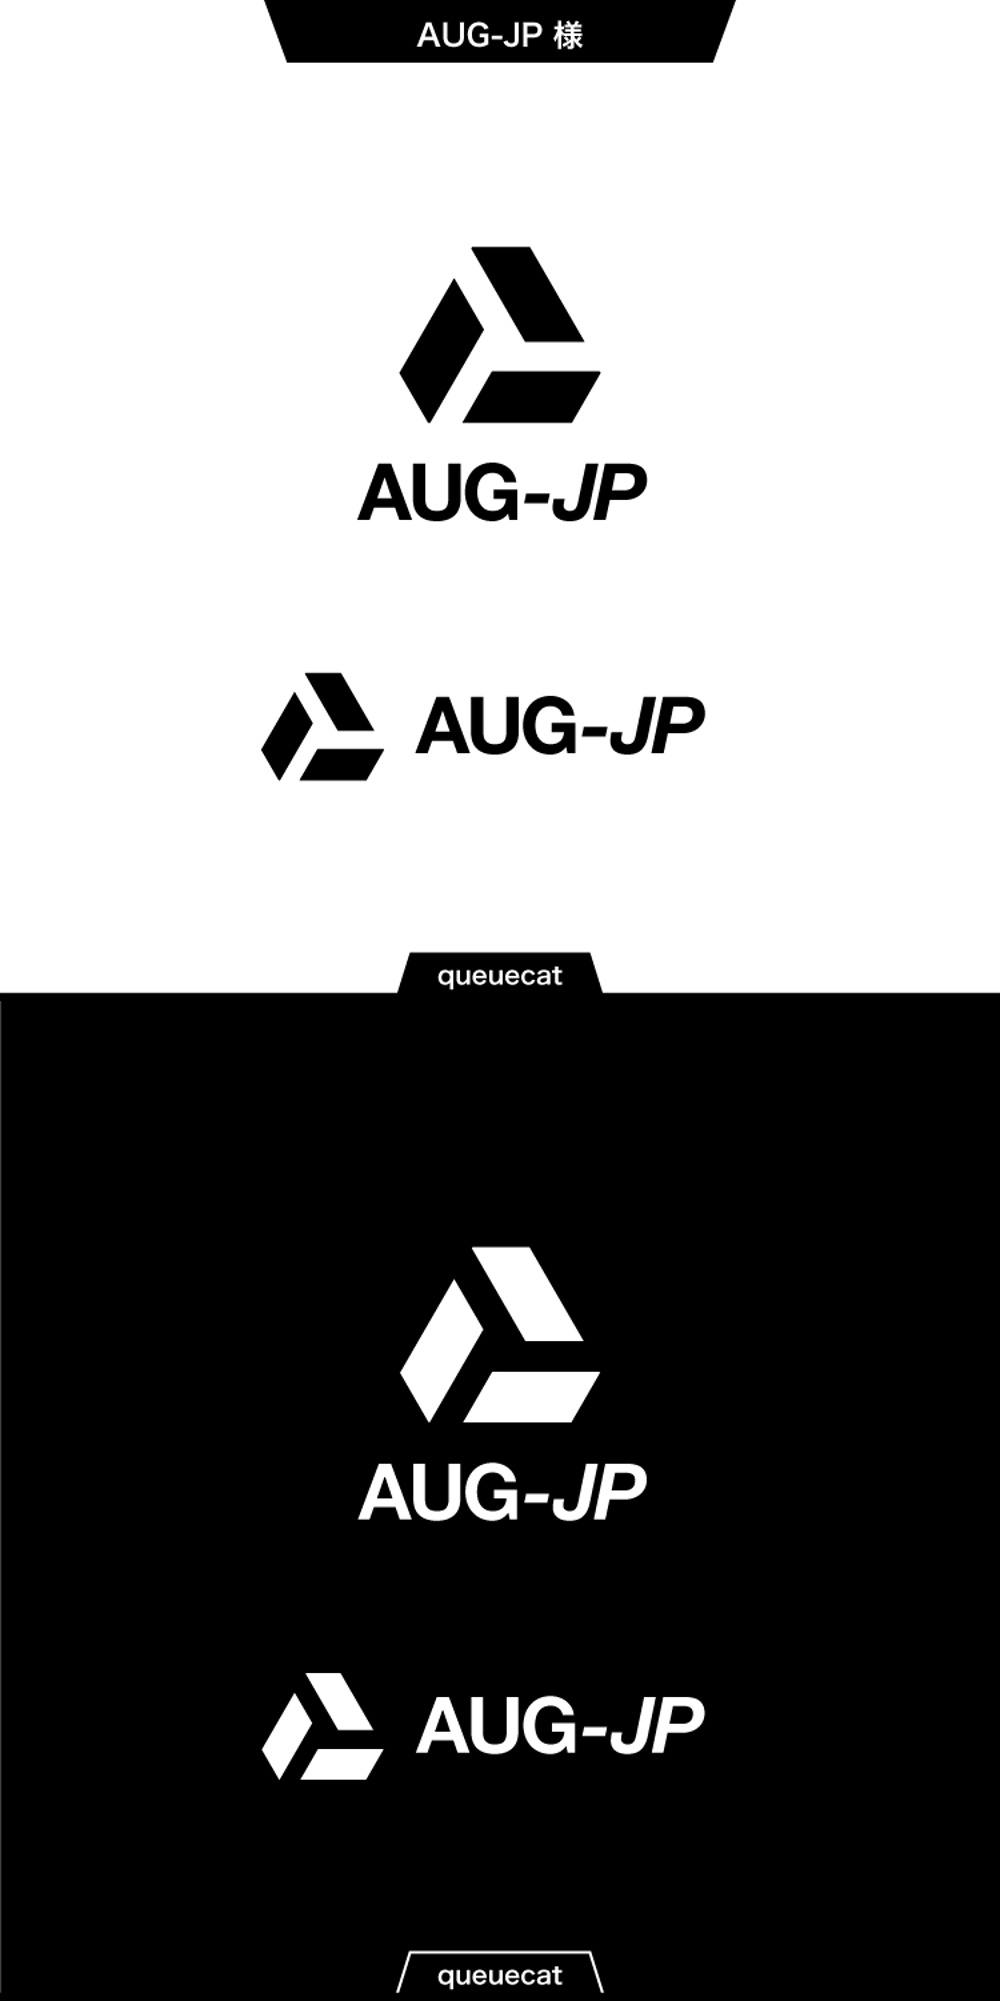 ユーザ会の名称変更による新ロゴ作成